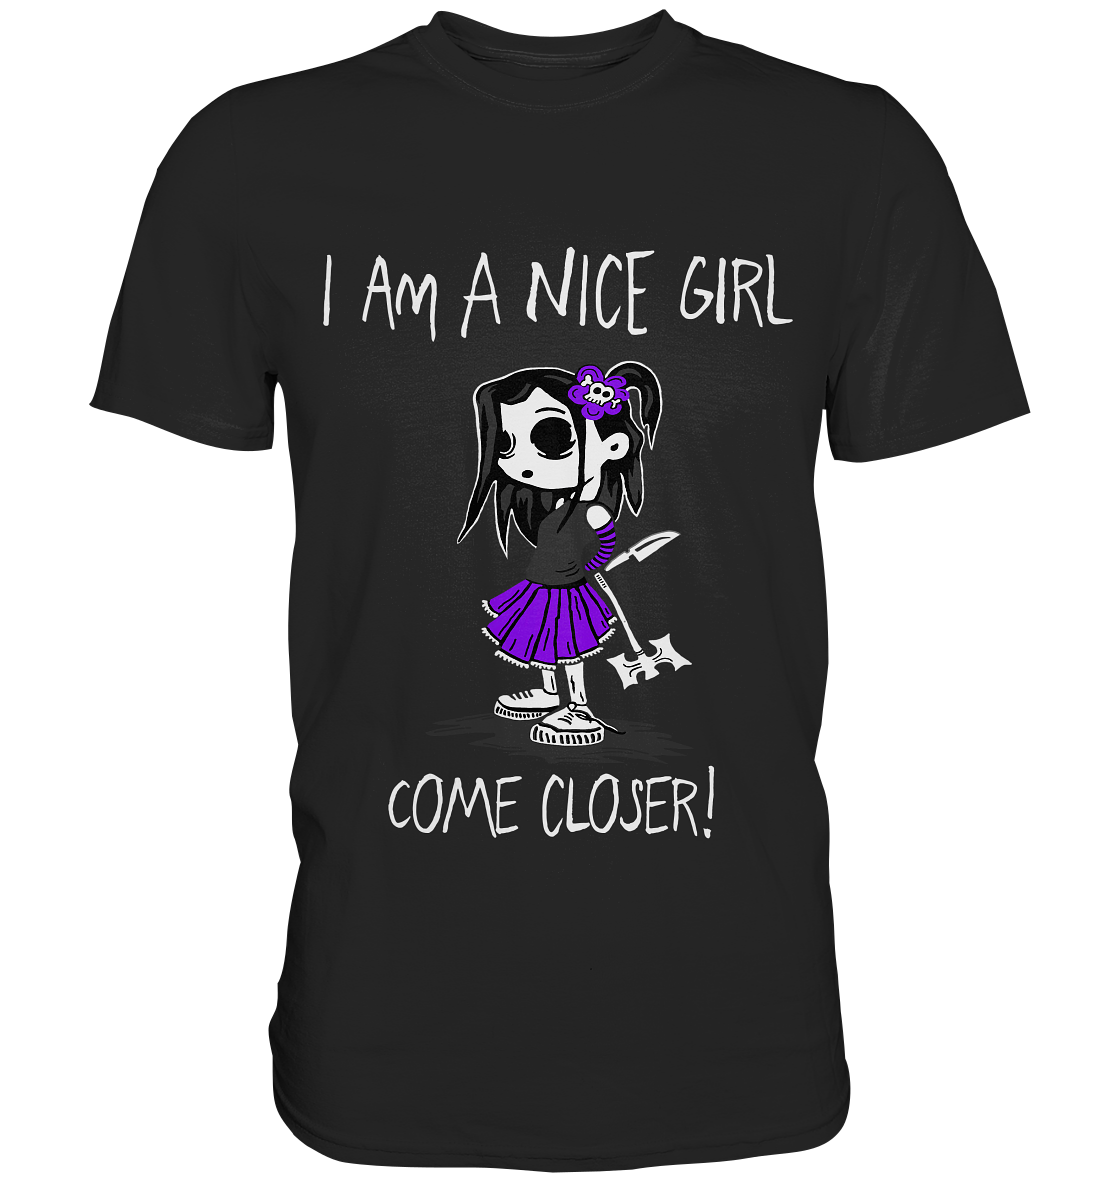 I am a nice girl. Come closer! - Premium Shirt